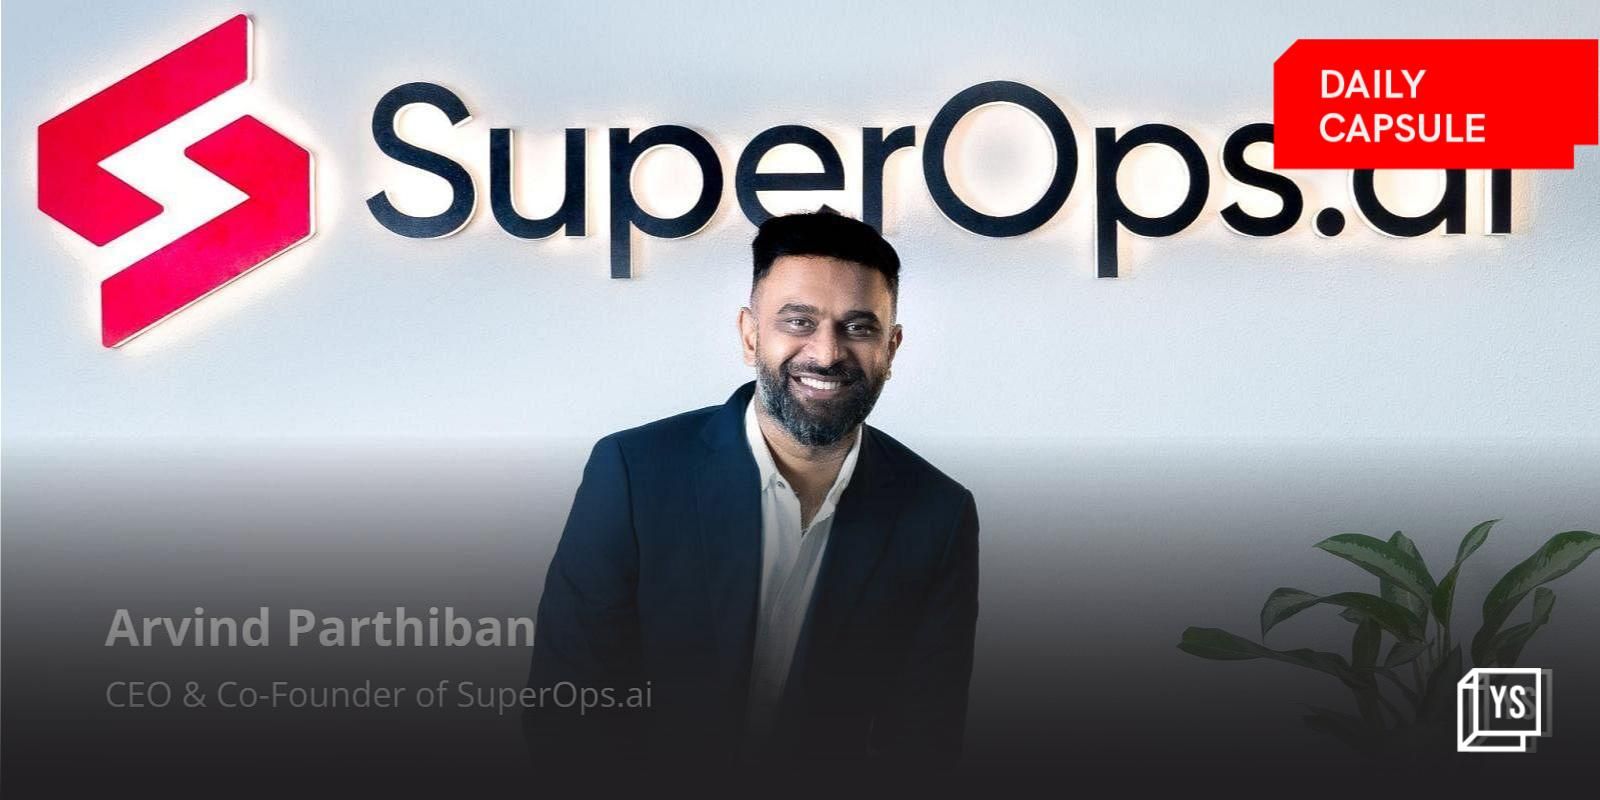 Journey of SuperOps.ai CEO Arvind Parthiban; Akshayakalpa's plans to raise $25M funding